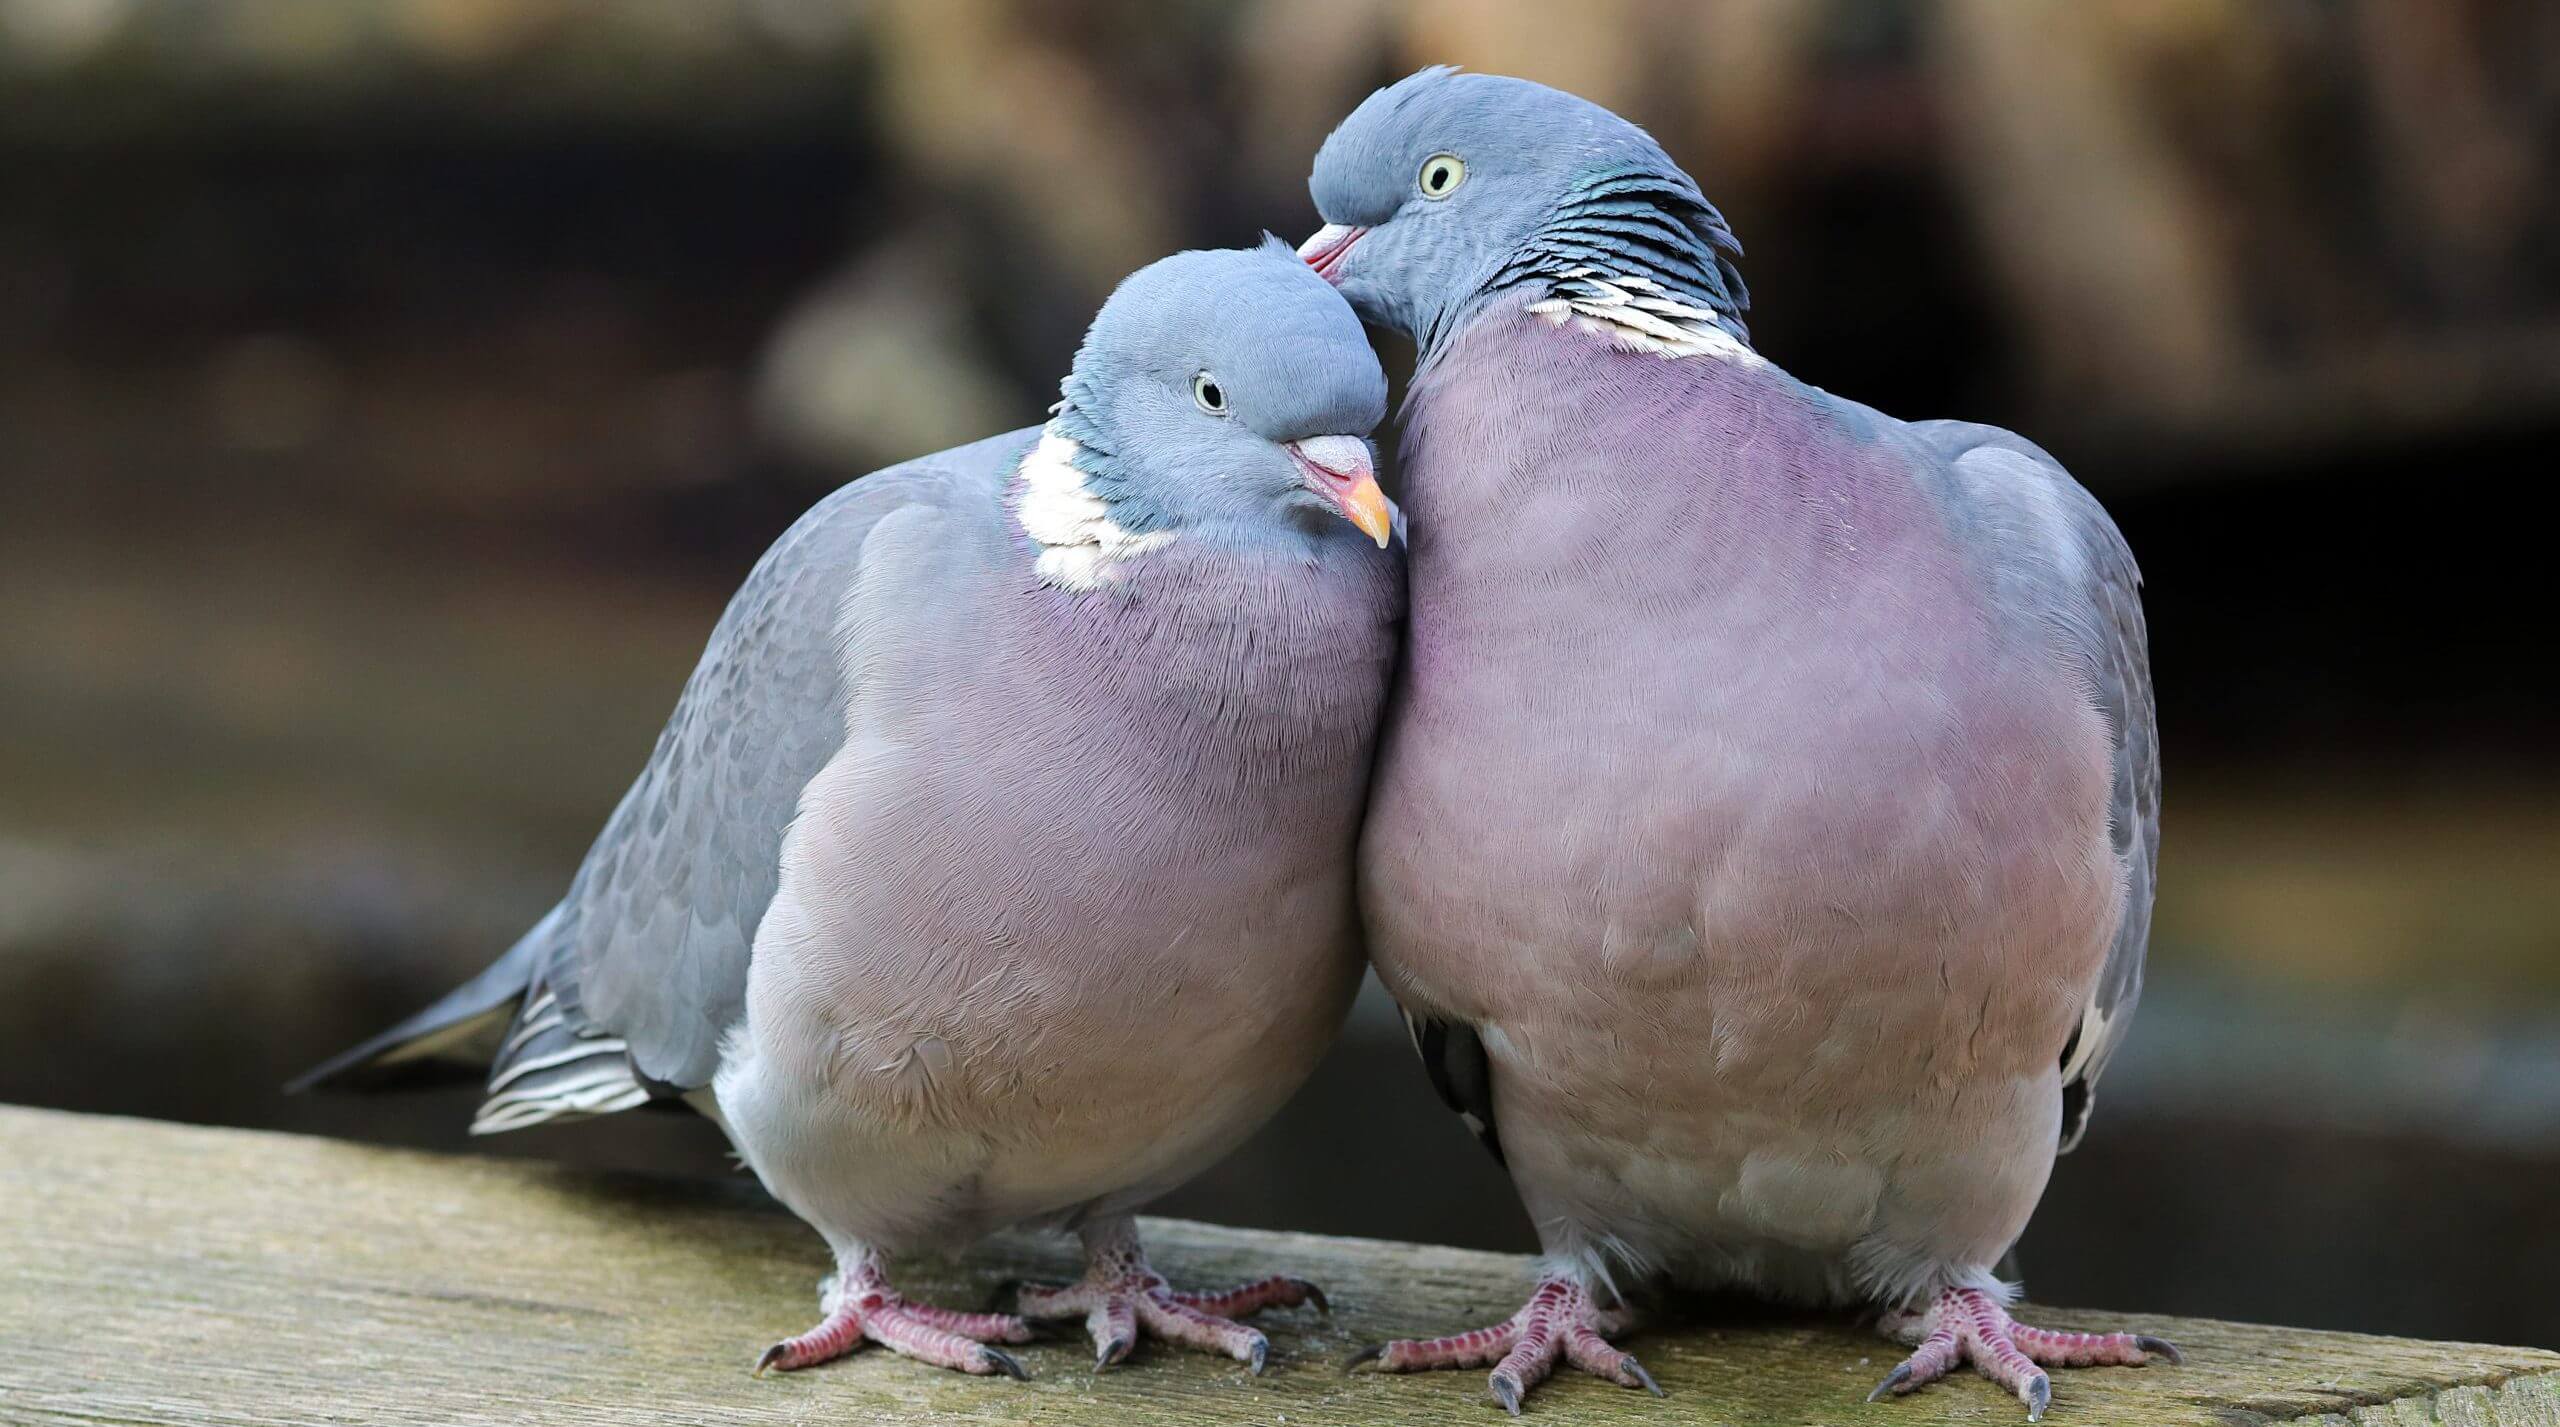 Wood pigeons in love